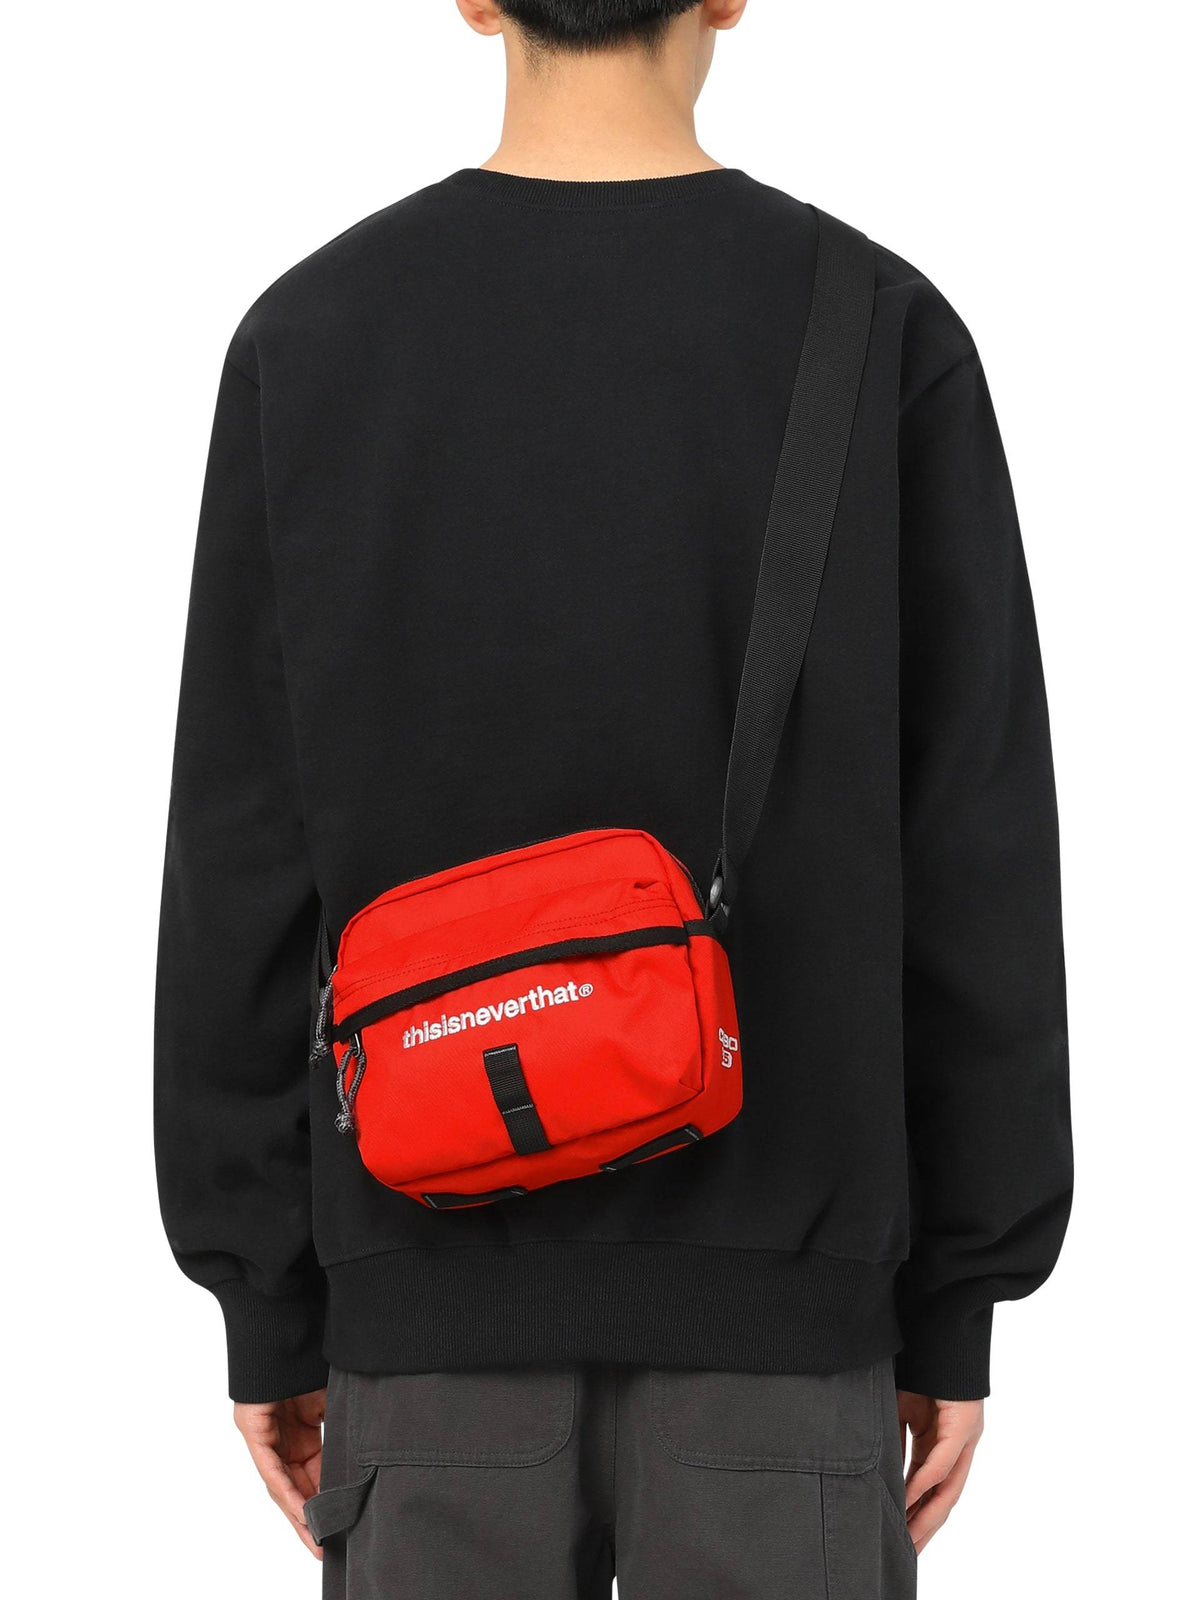 CA90 2.5 Shoulder Bag Bag